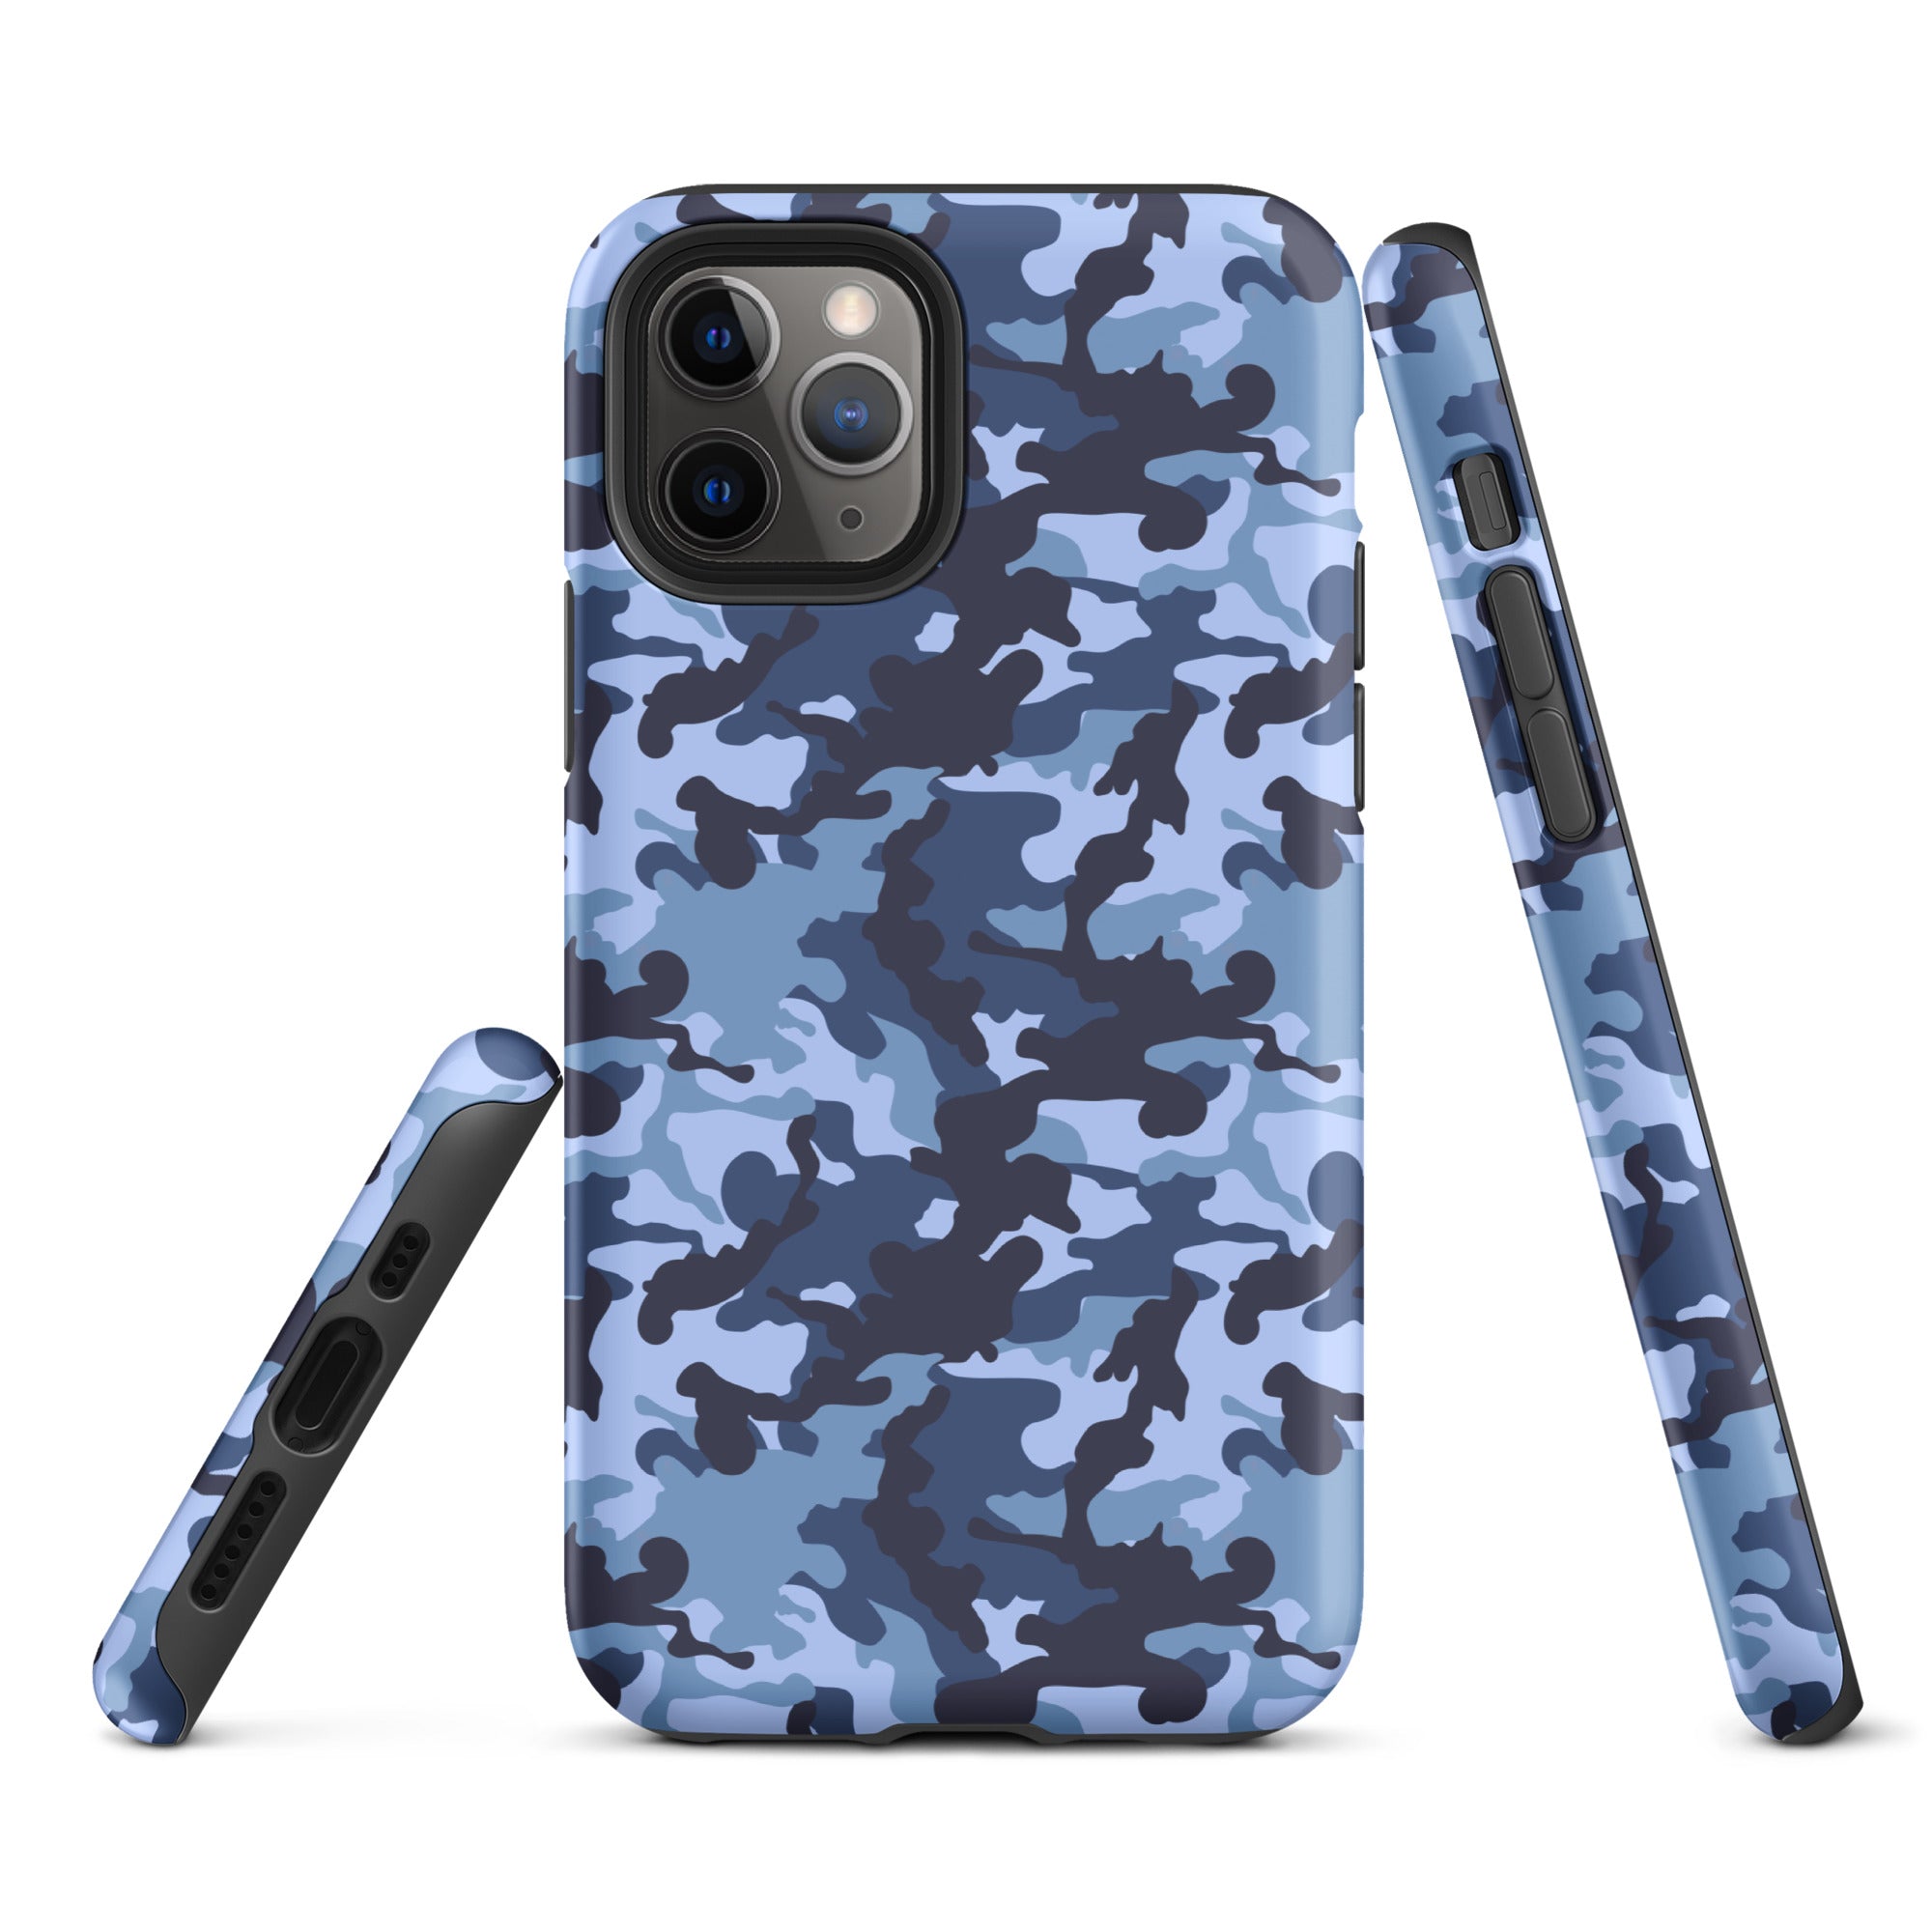 Tough Case for iPhone®- Camo Navy